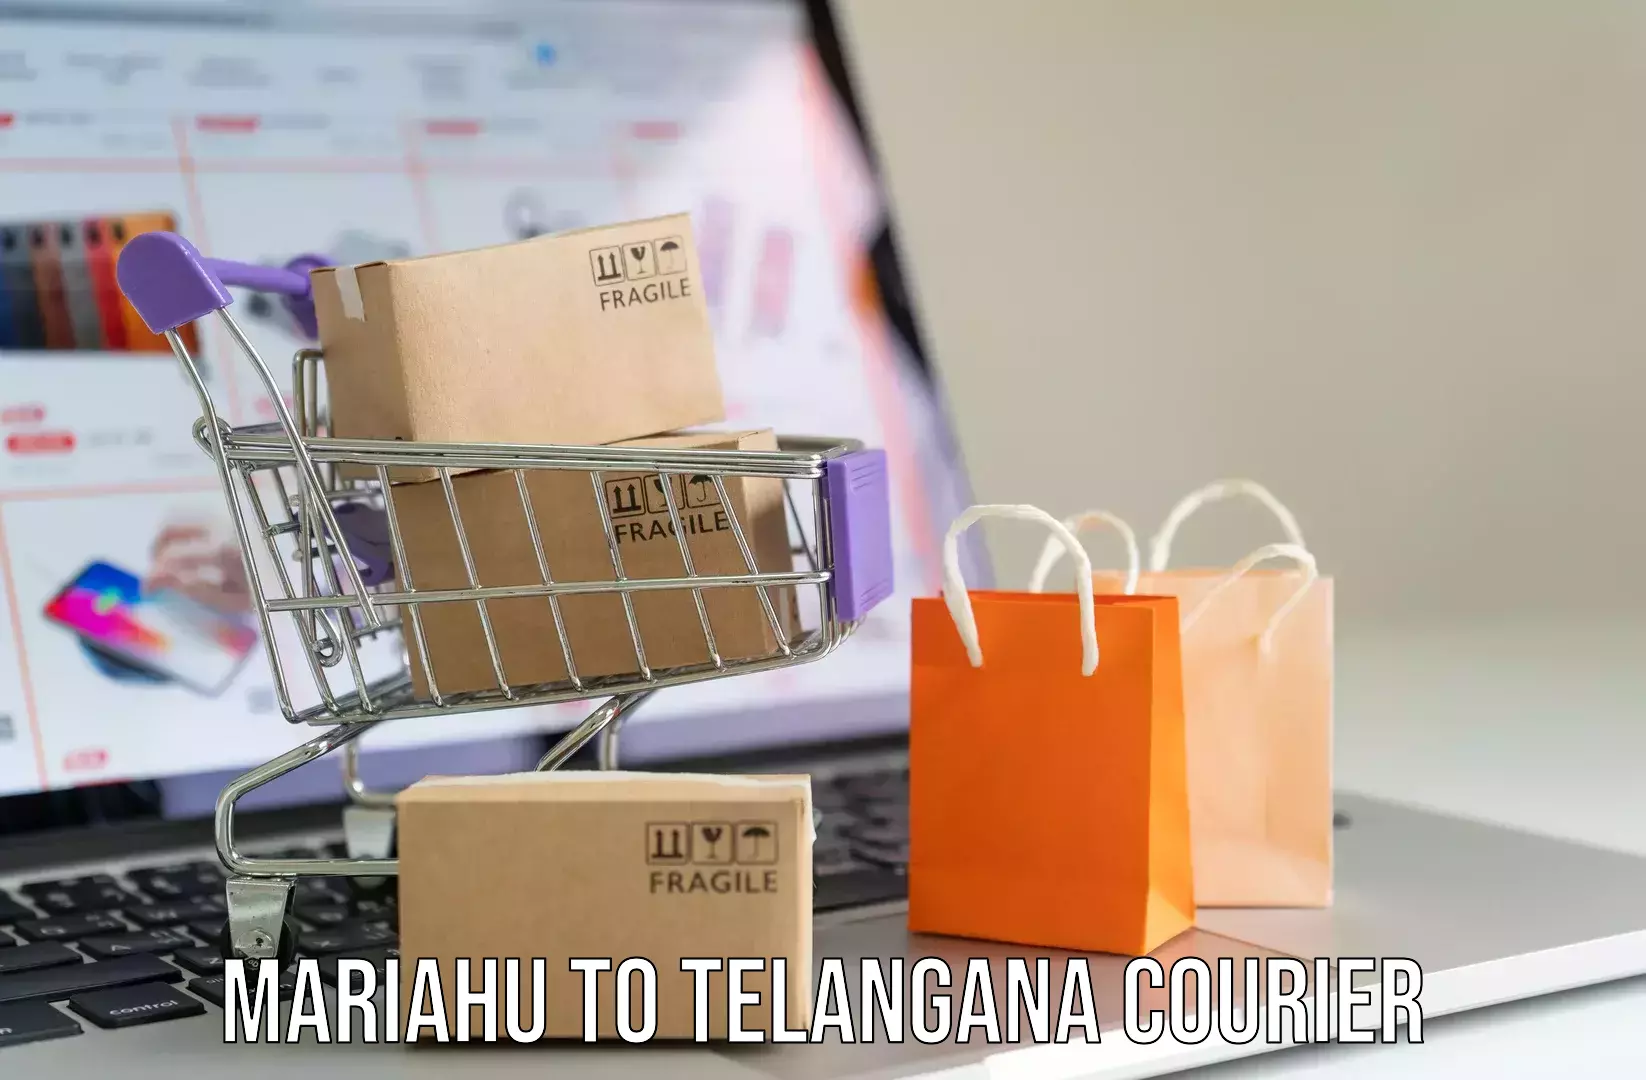 Comprehensive baggage service Mariahu to Telangana